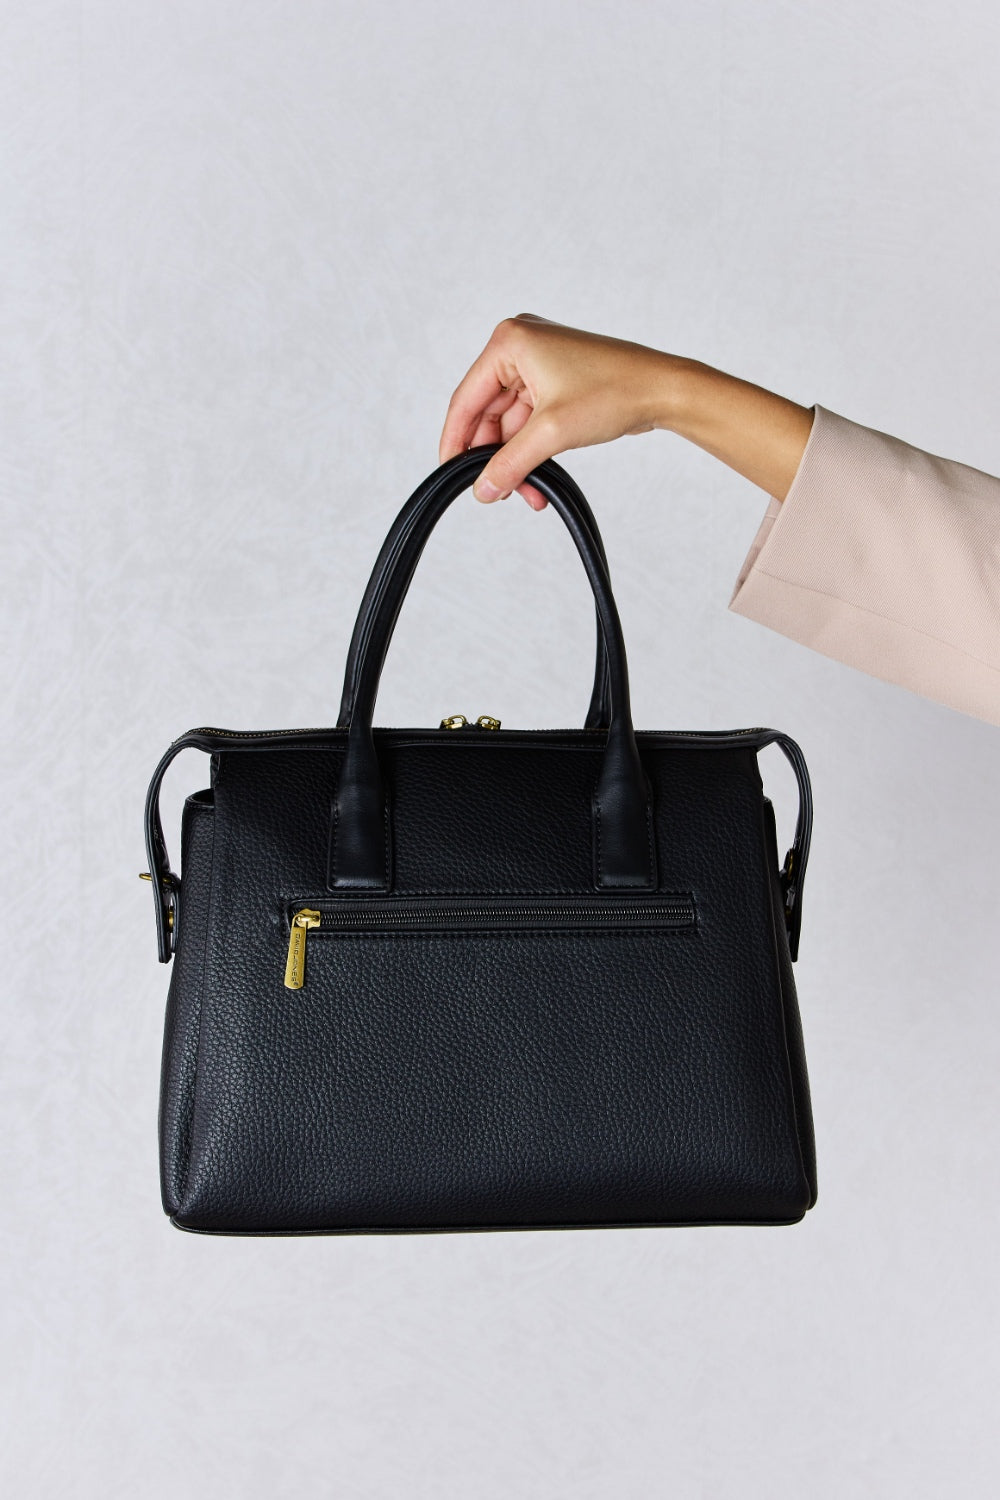 David Jones Medium PU Leather Handbag - Fashion BTQ -  - Fashion BTQ